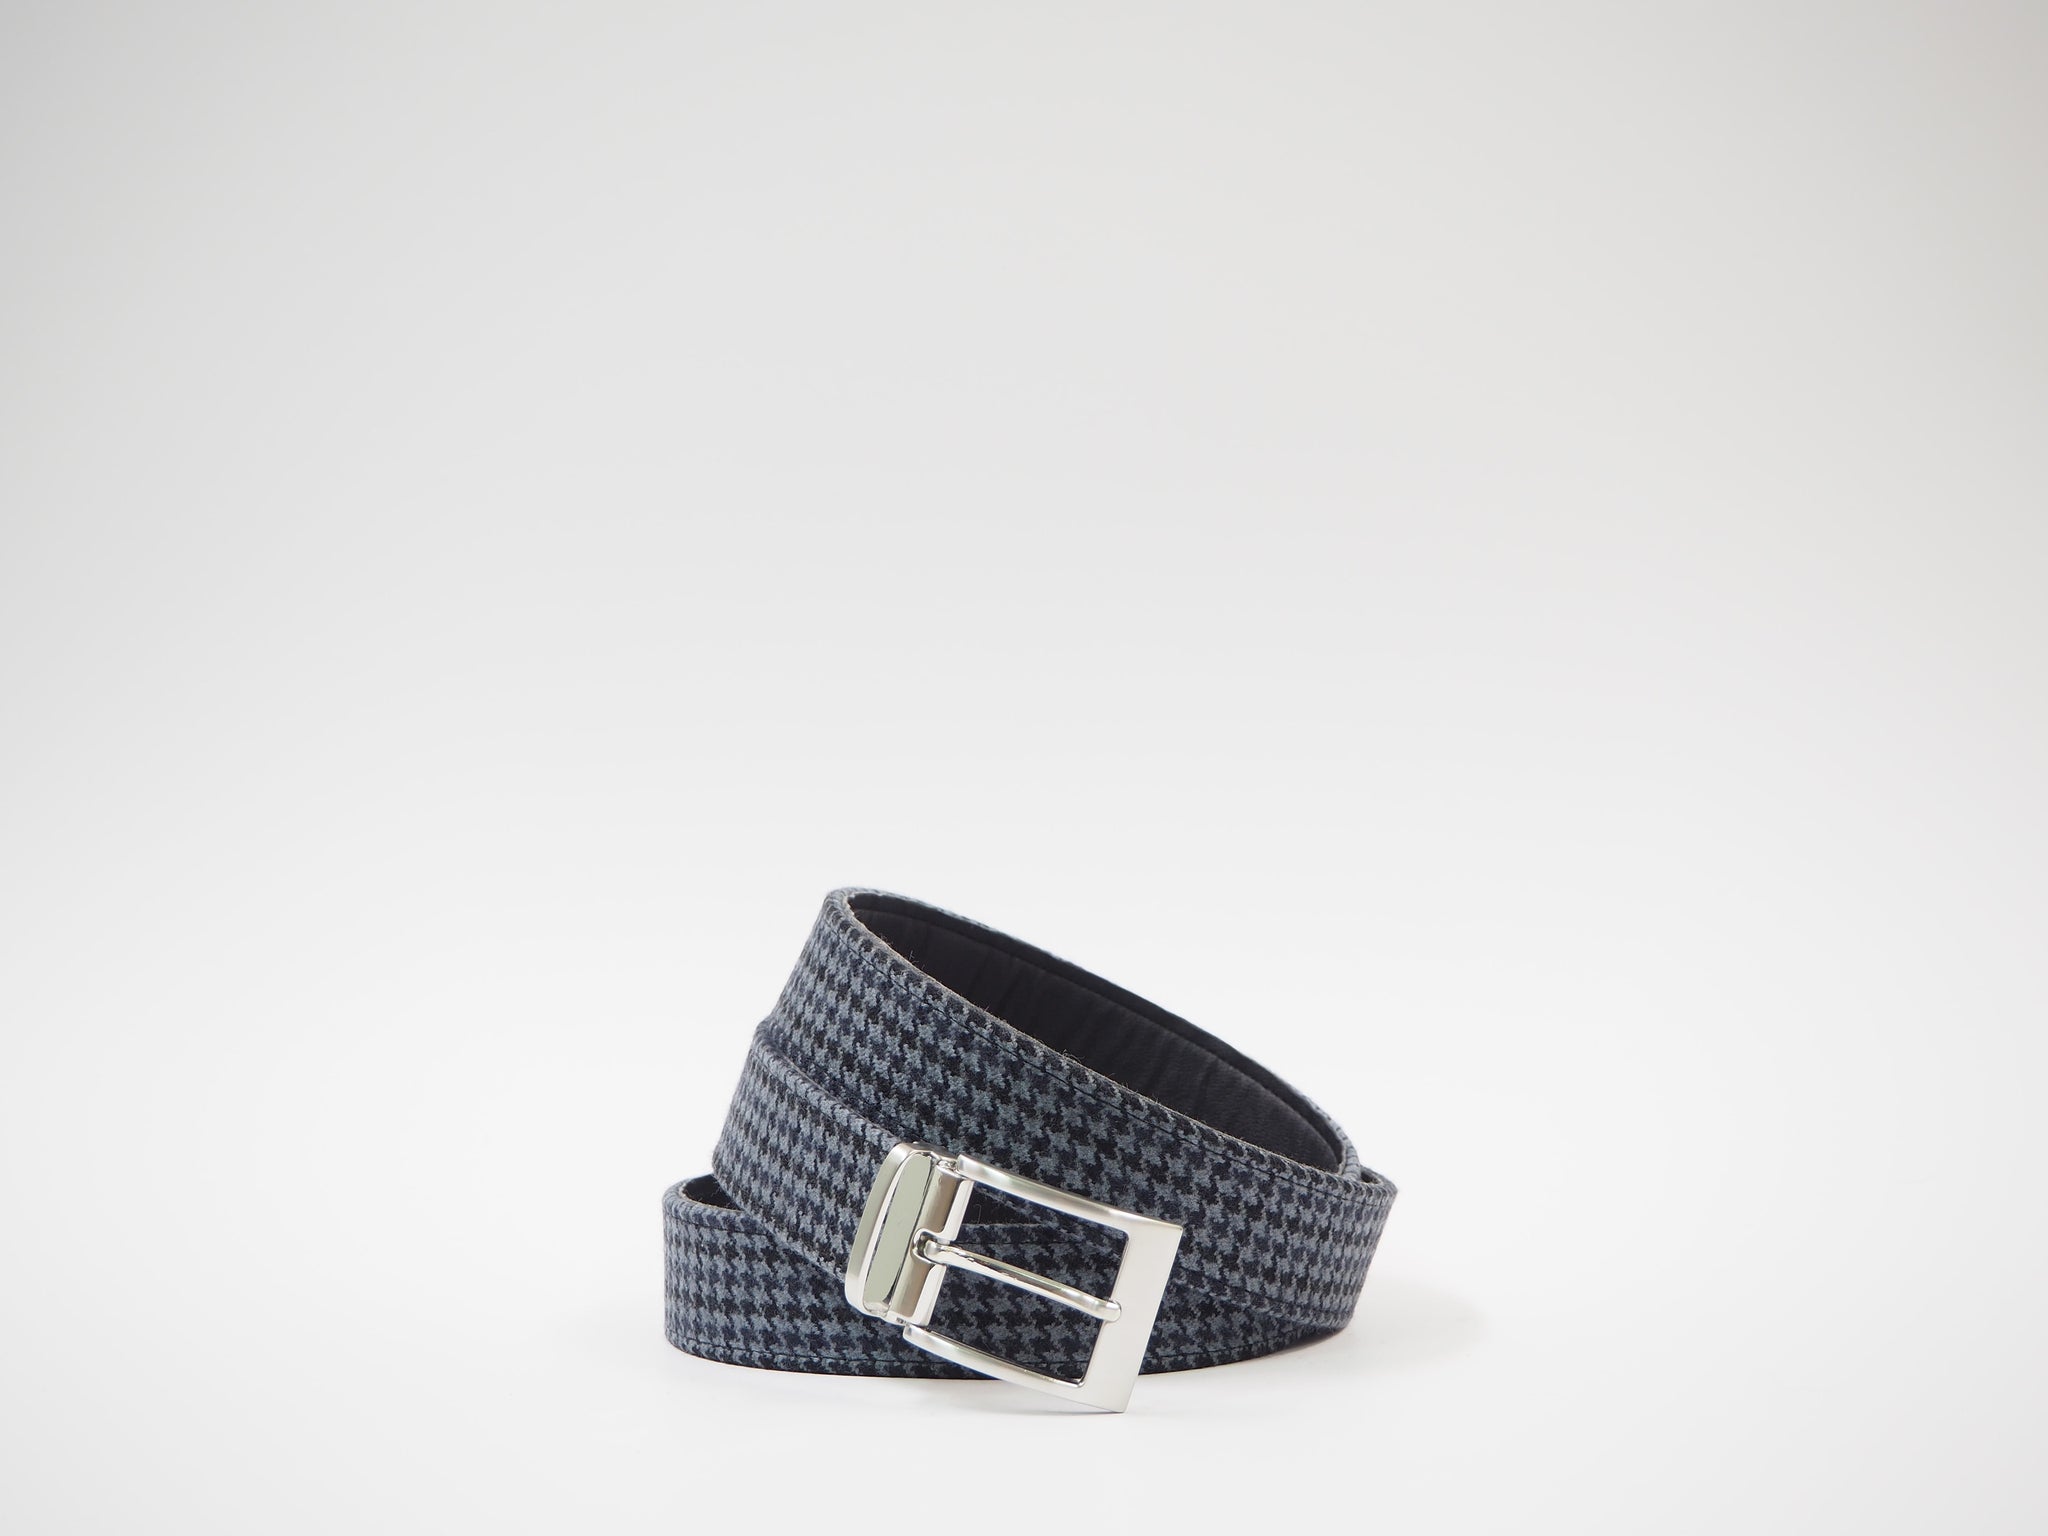 Size 43 - Light Blue & Black Pied de Poule Oxford + Belt